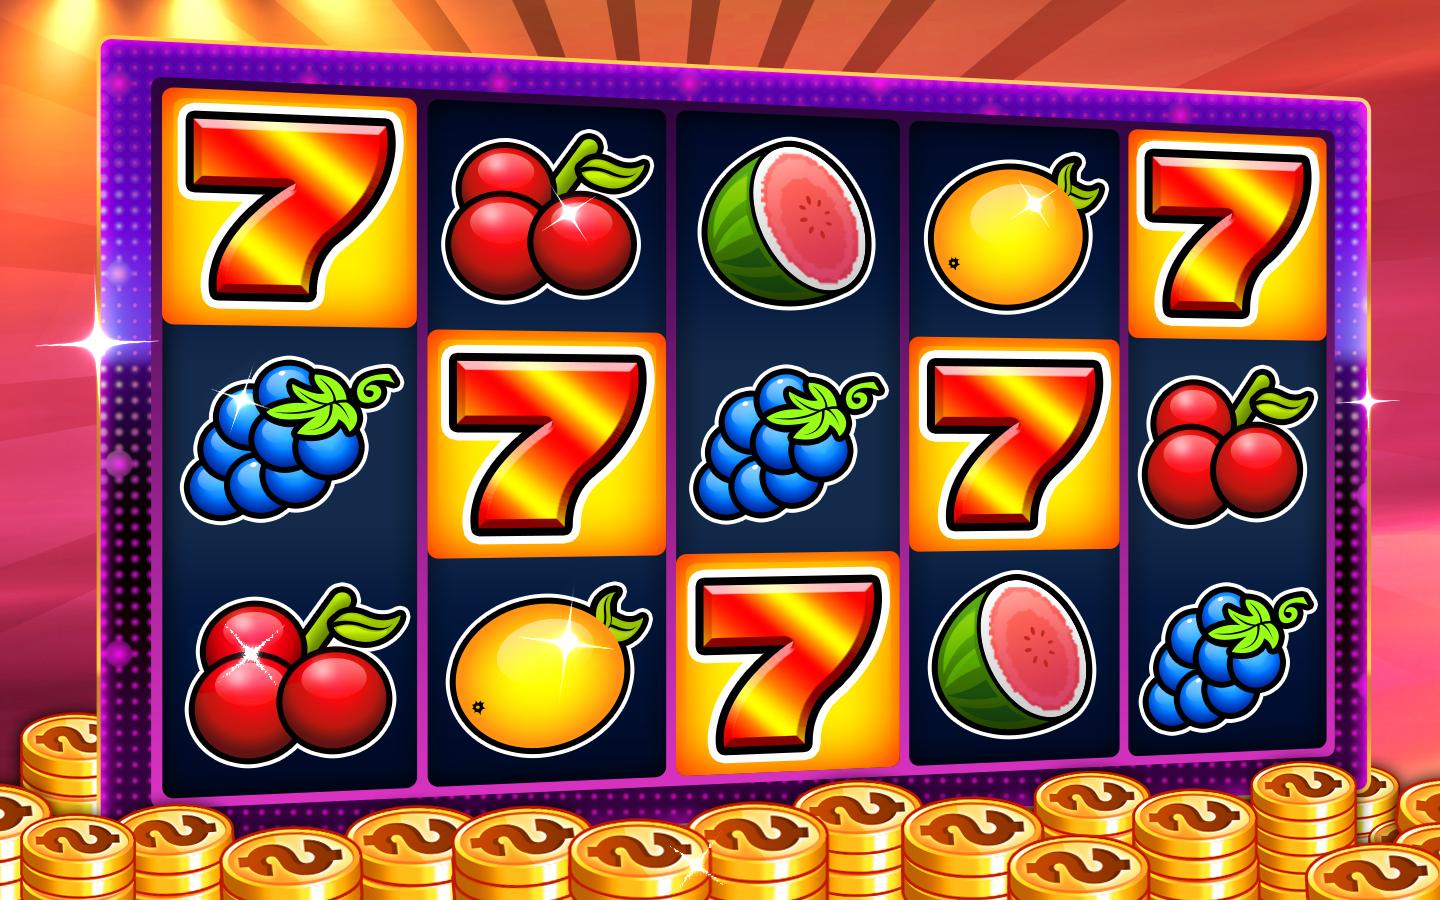 Penny slot machines gratis juegos casino online Dominicana 888376